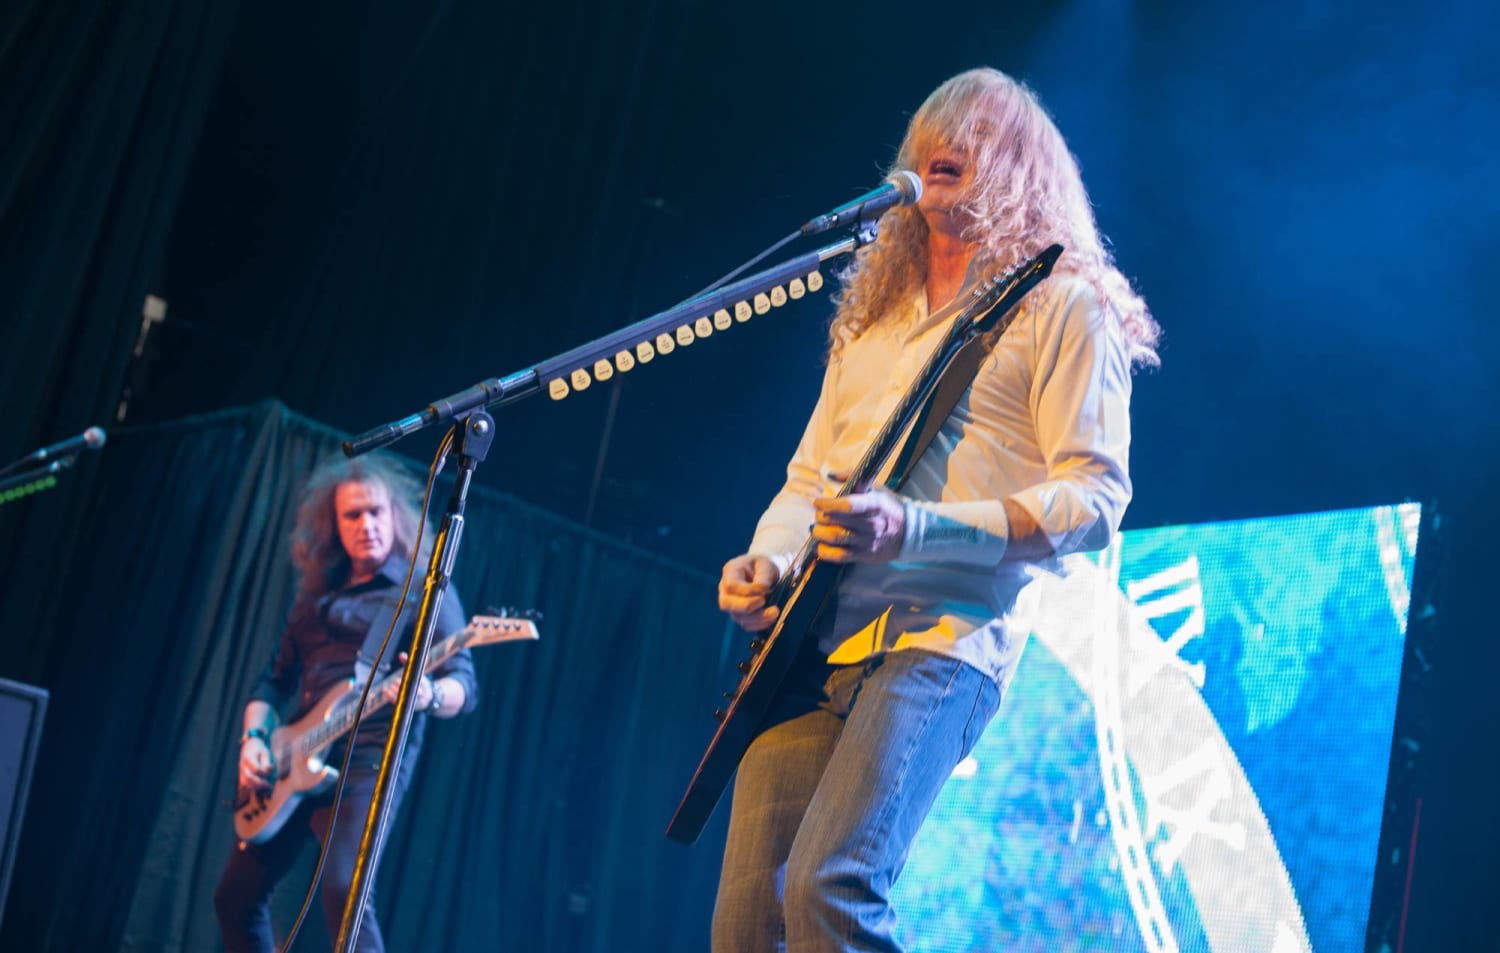 Megadeth's David Ellefson praises "tireless warrior" Dave Mustaine